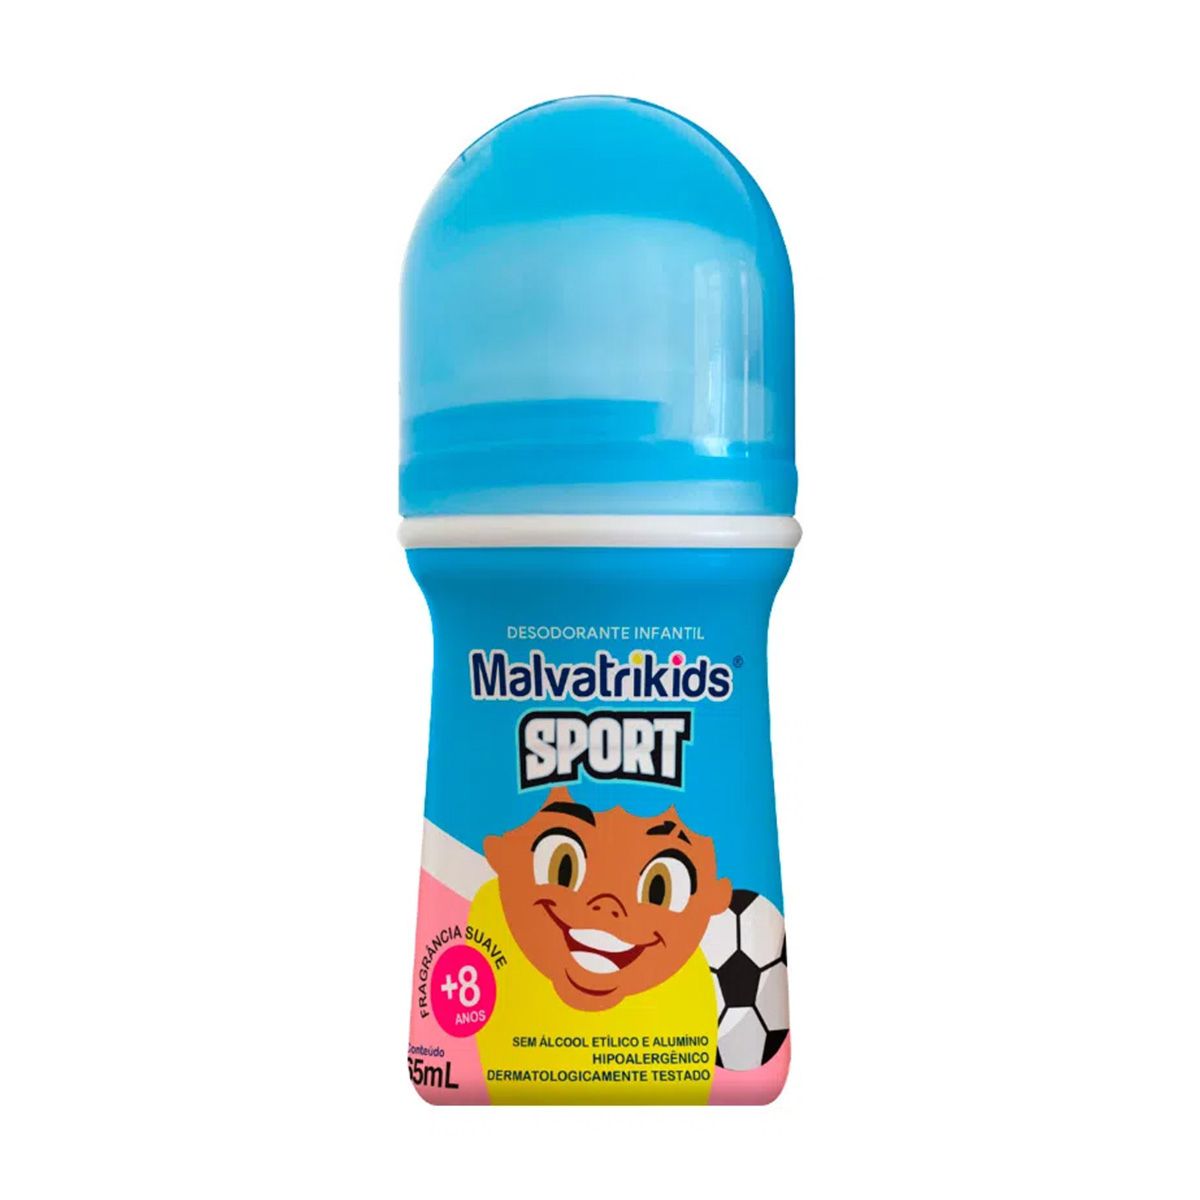 Desodorante Malvatrikids +8 Anos Roll-On Infantil Sport 65ml - Resilifarma  - Saúde em primeiro lugar